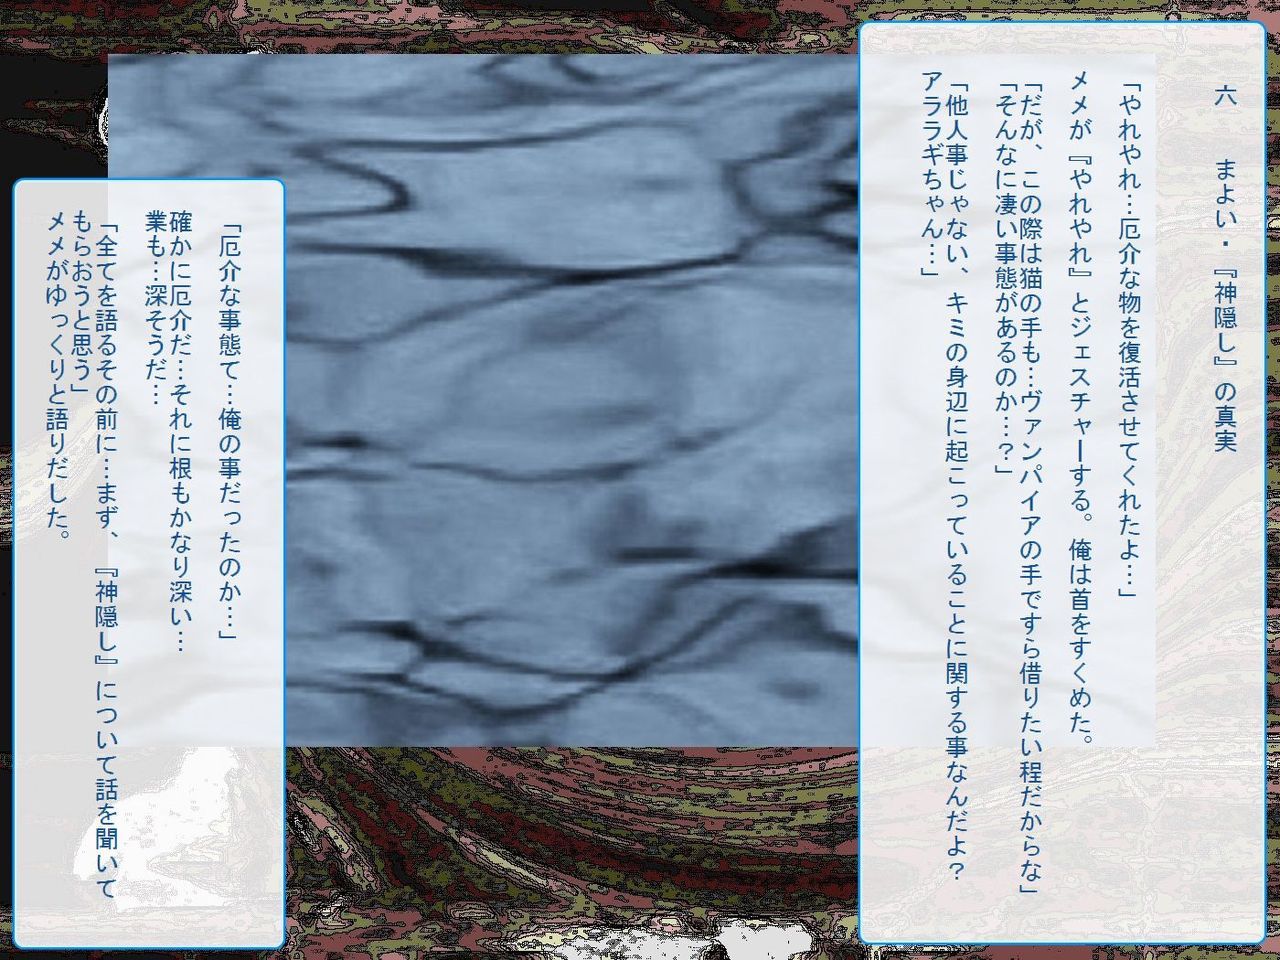 [Teito Bouei Ryodan] RTK Book Ver. 8.4: “‘Tsuki’ Monogatari Saishuu-banashi ‘Tsubasa, soshite... Mayoi maimai’” (<Monogatari> Series) [帝都防衛旅団] RTKBOOK Ver.8.4 「『憑き』物語 最終話 『ひ〇ぎ倶楽部』」 (〈物語〉シリーズ) 72